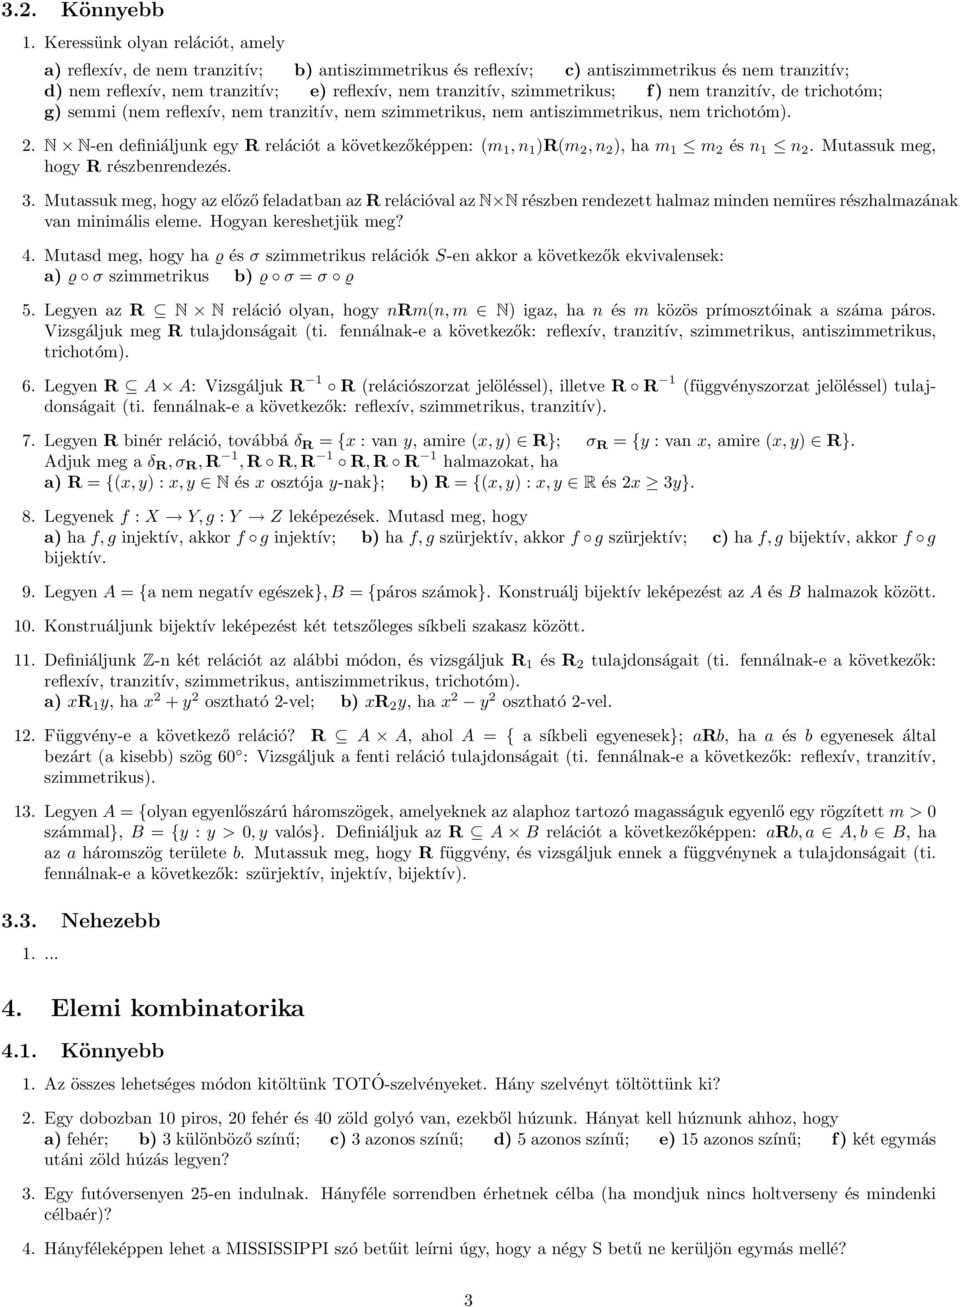 Diszkrét matematika I. feladatok - PDF Ingyenes letöltés